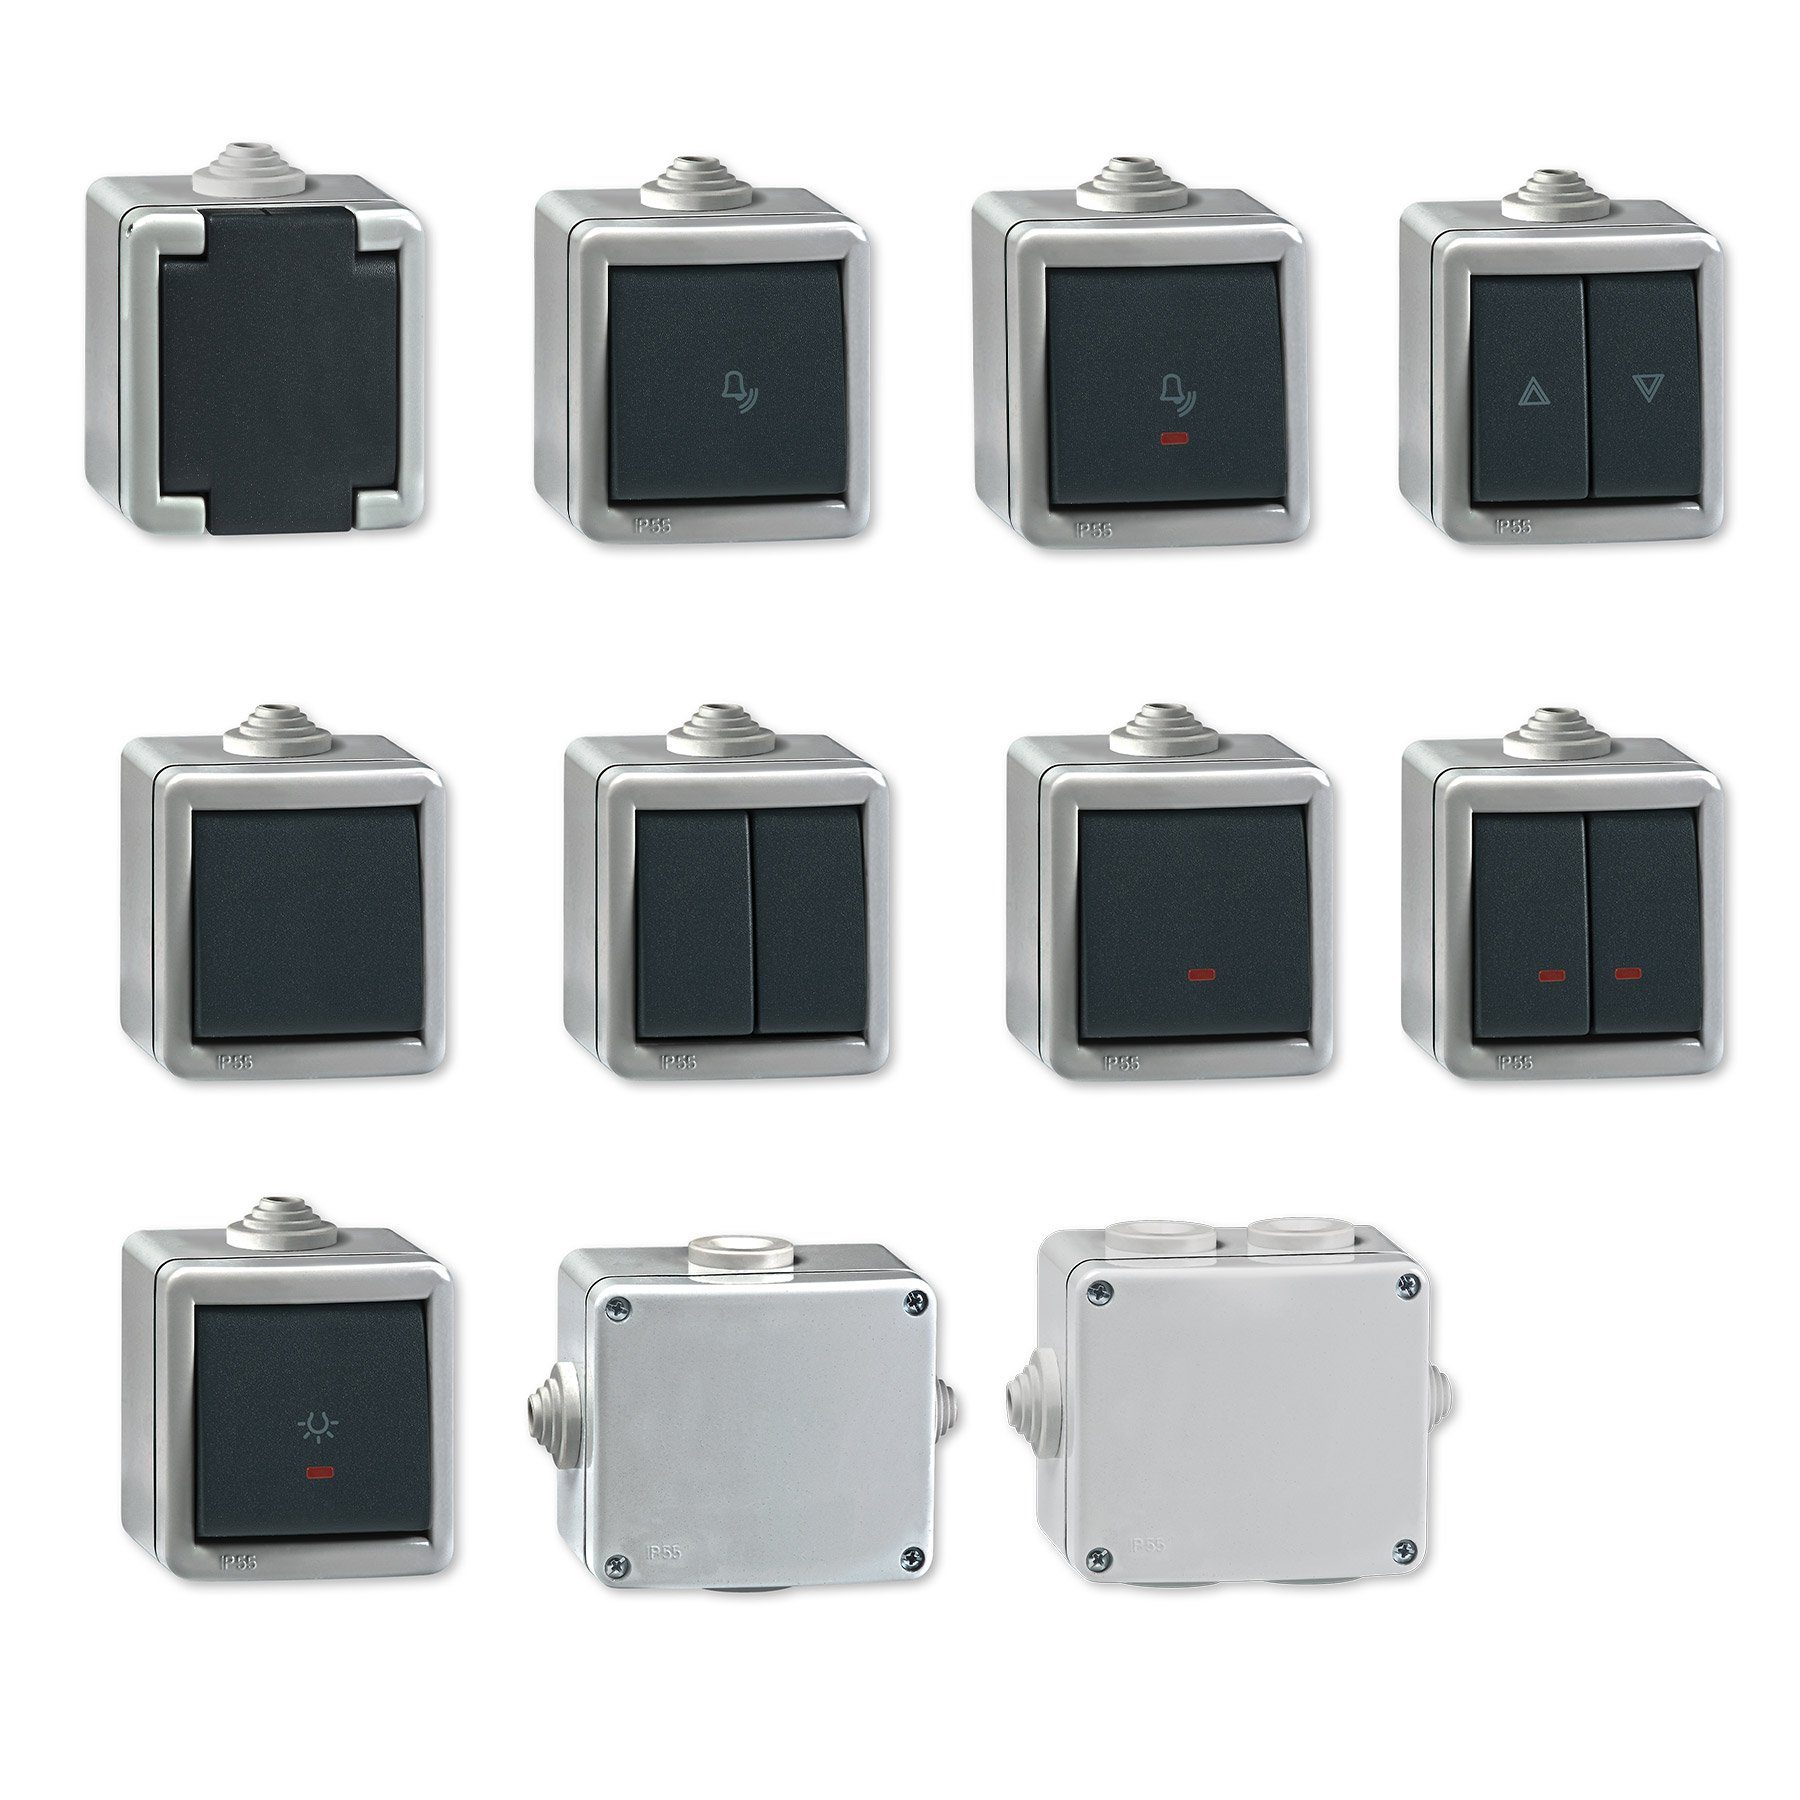 Aling Conel Ein/Aus IP Line Armor Schalter (Packung), Lichtschalter Aufputz 55